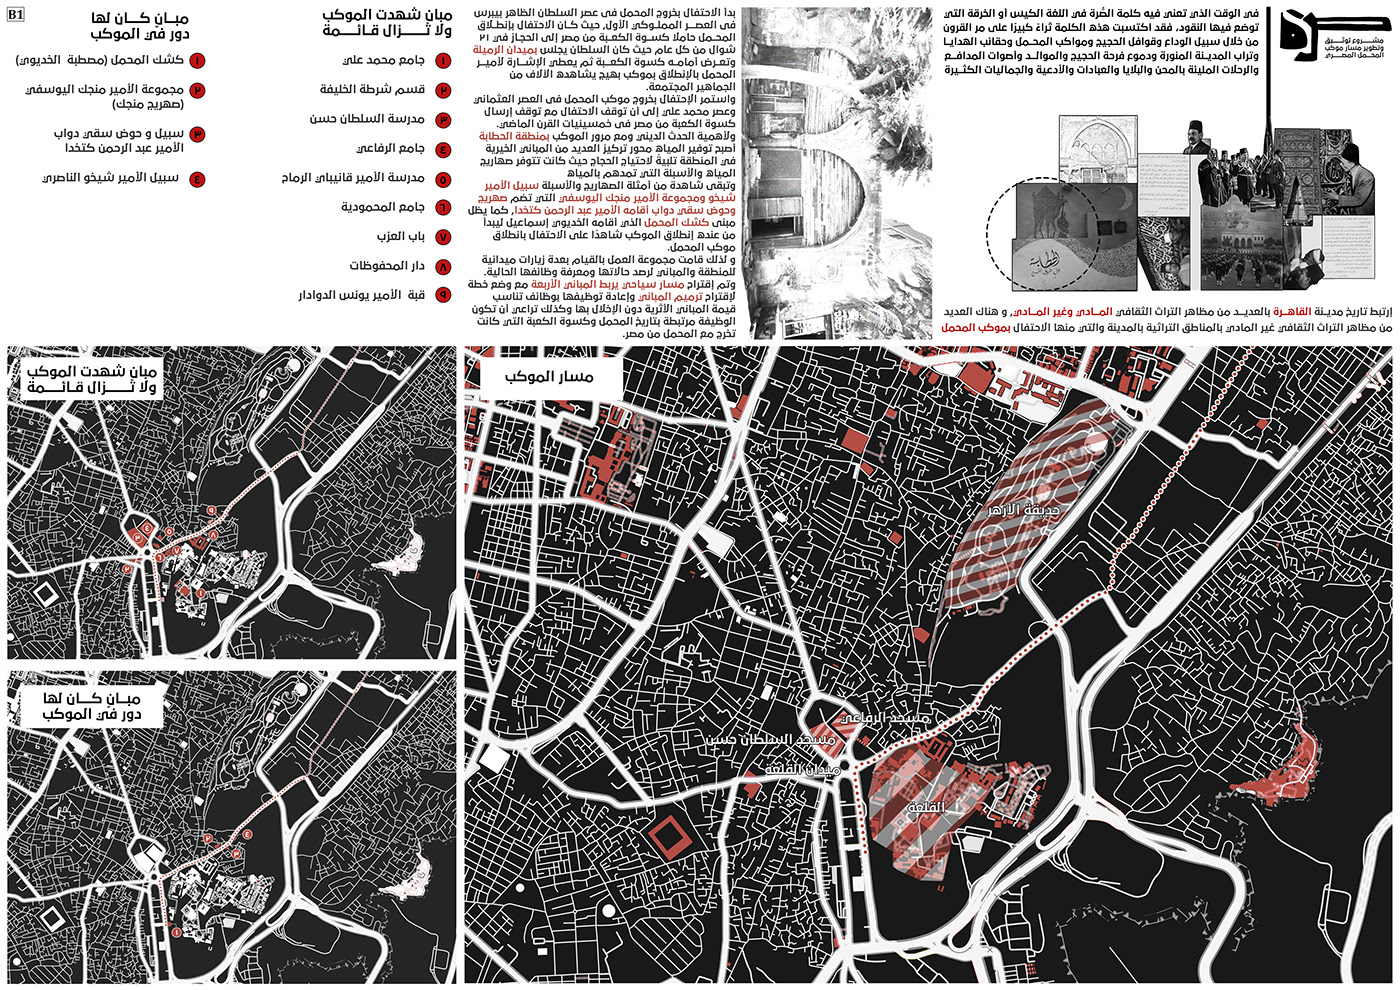 design Urban Design architecture 3D visualization architectural design history culture identity visual